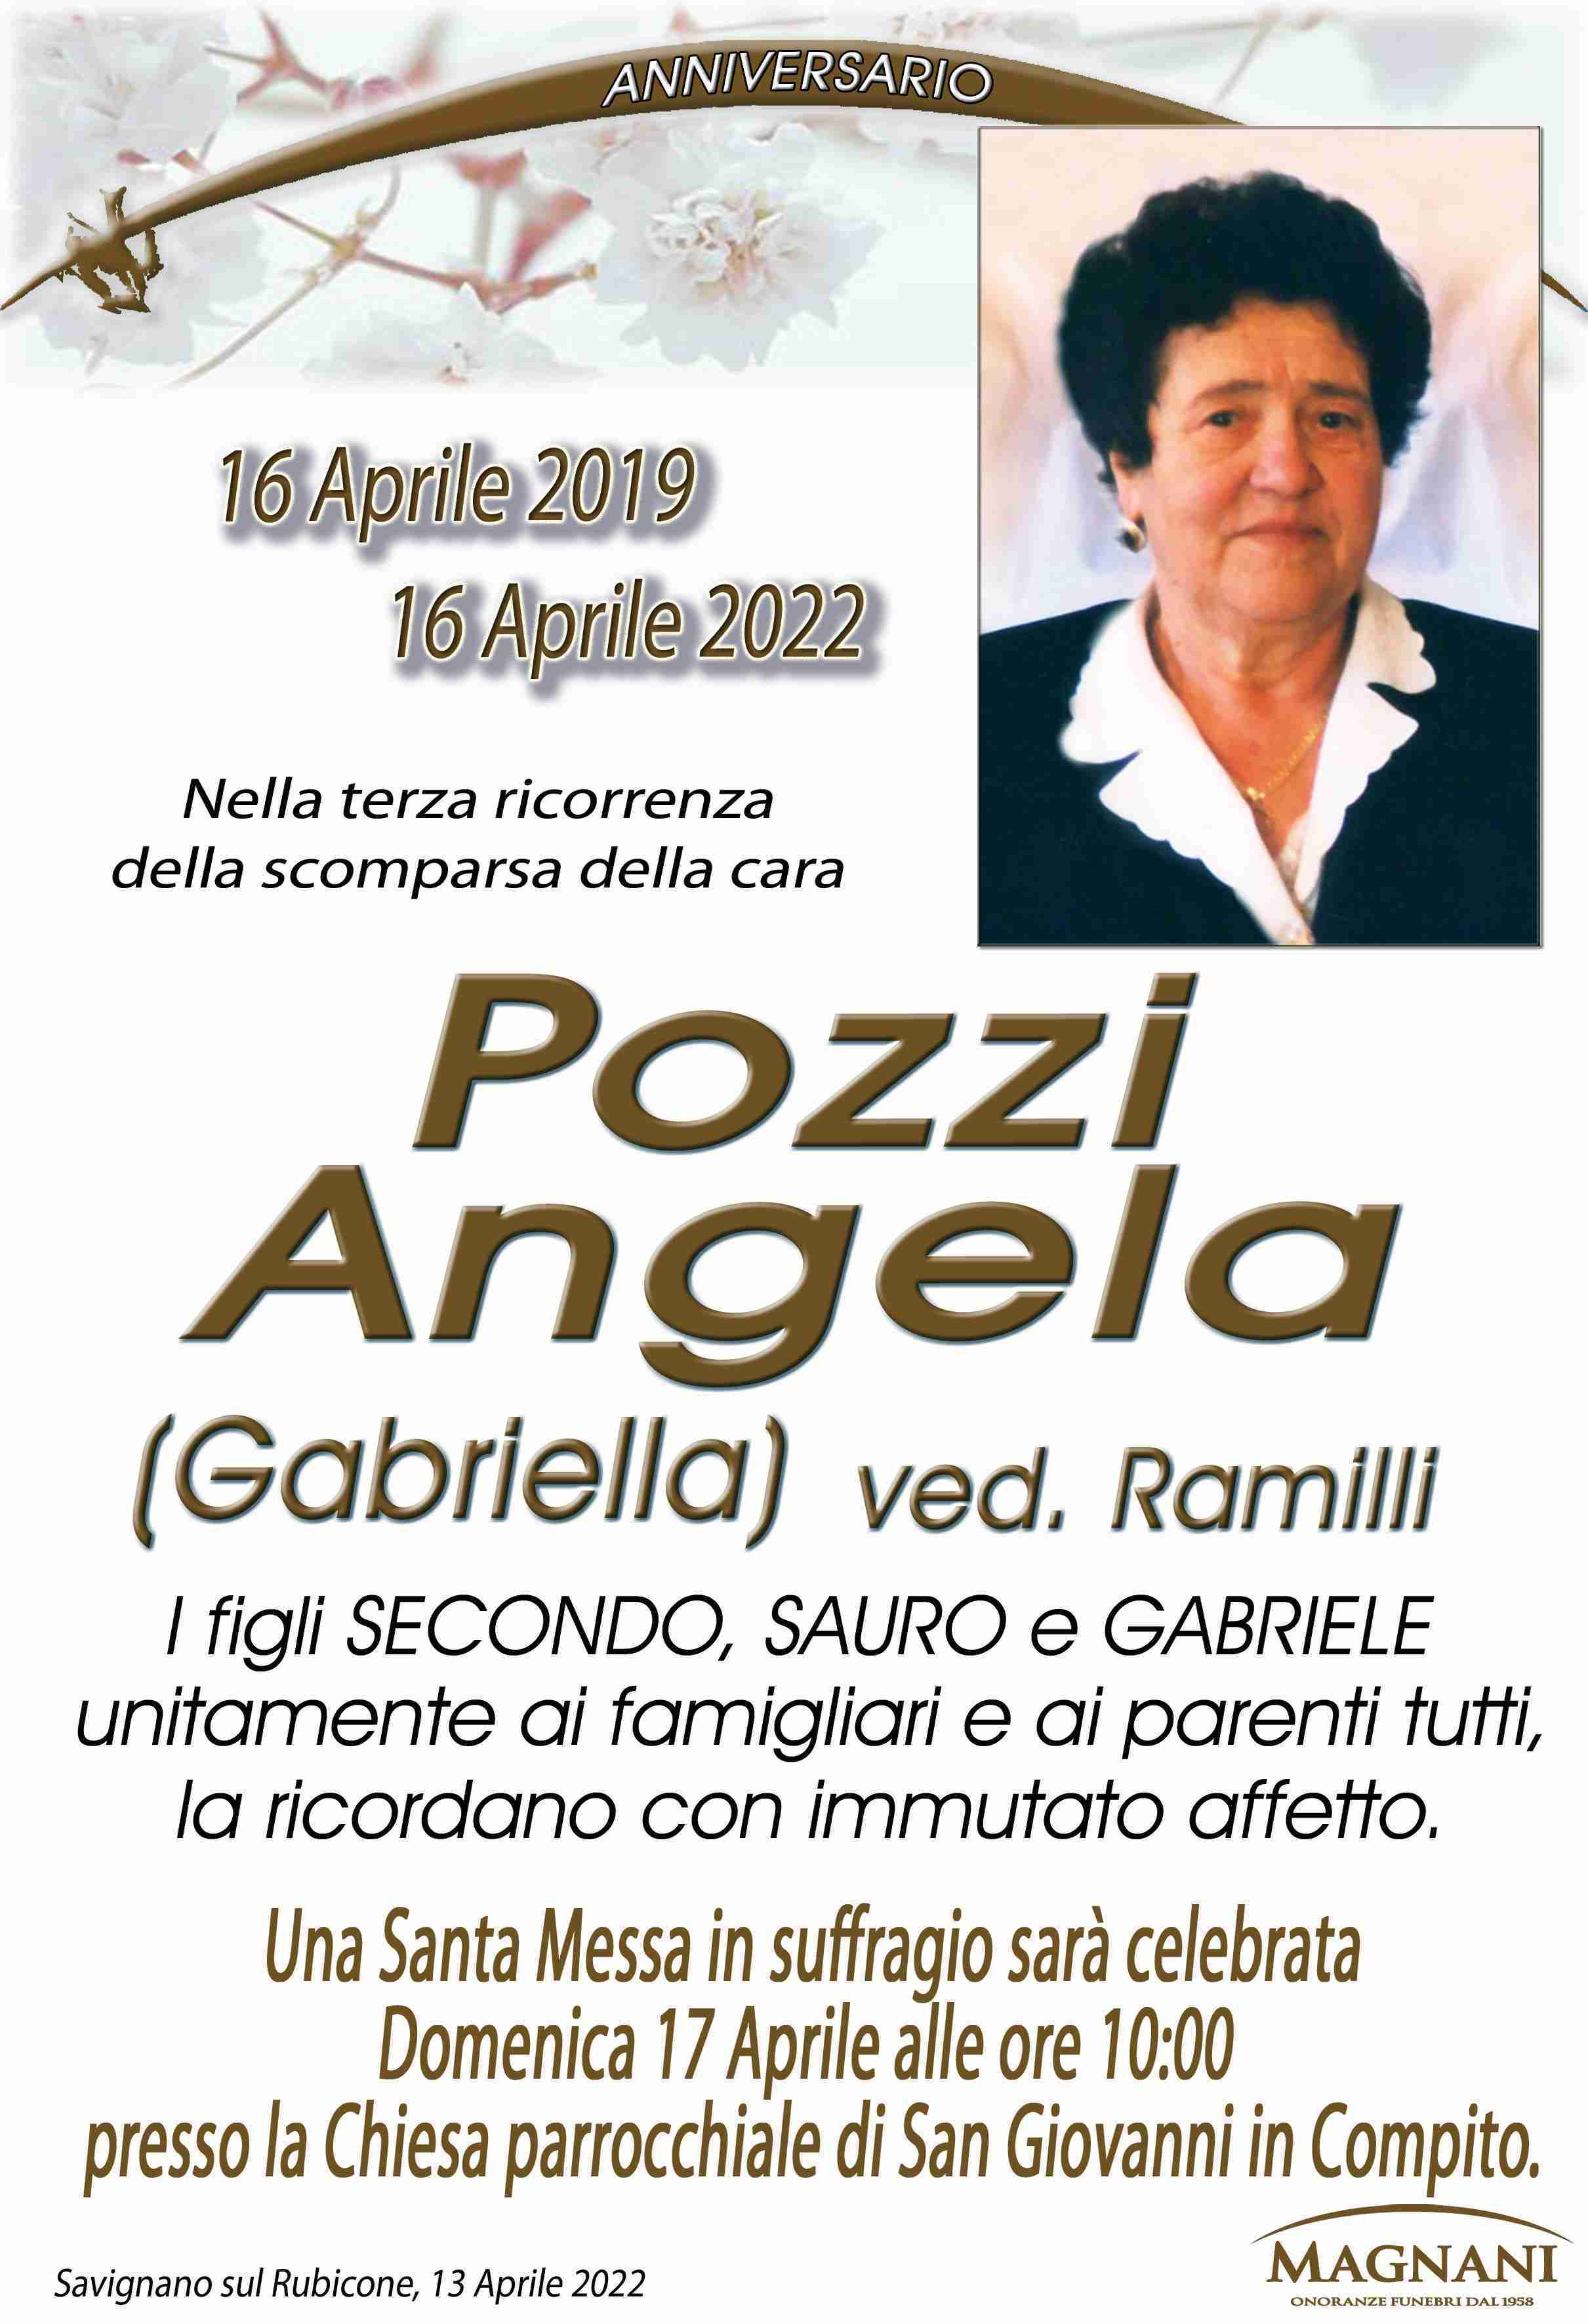 Angela Pozzi